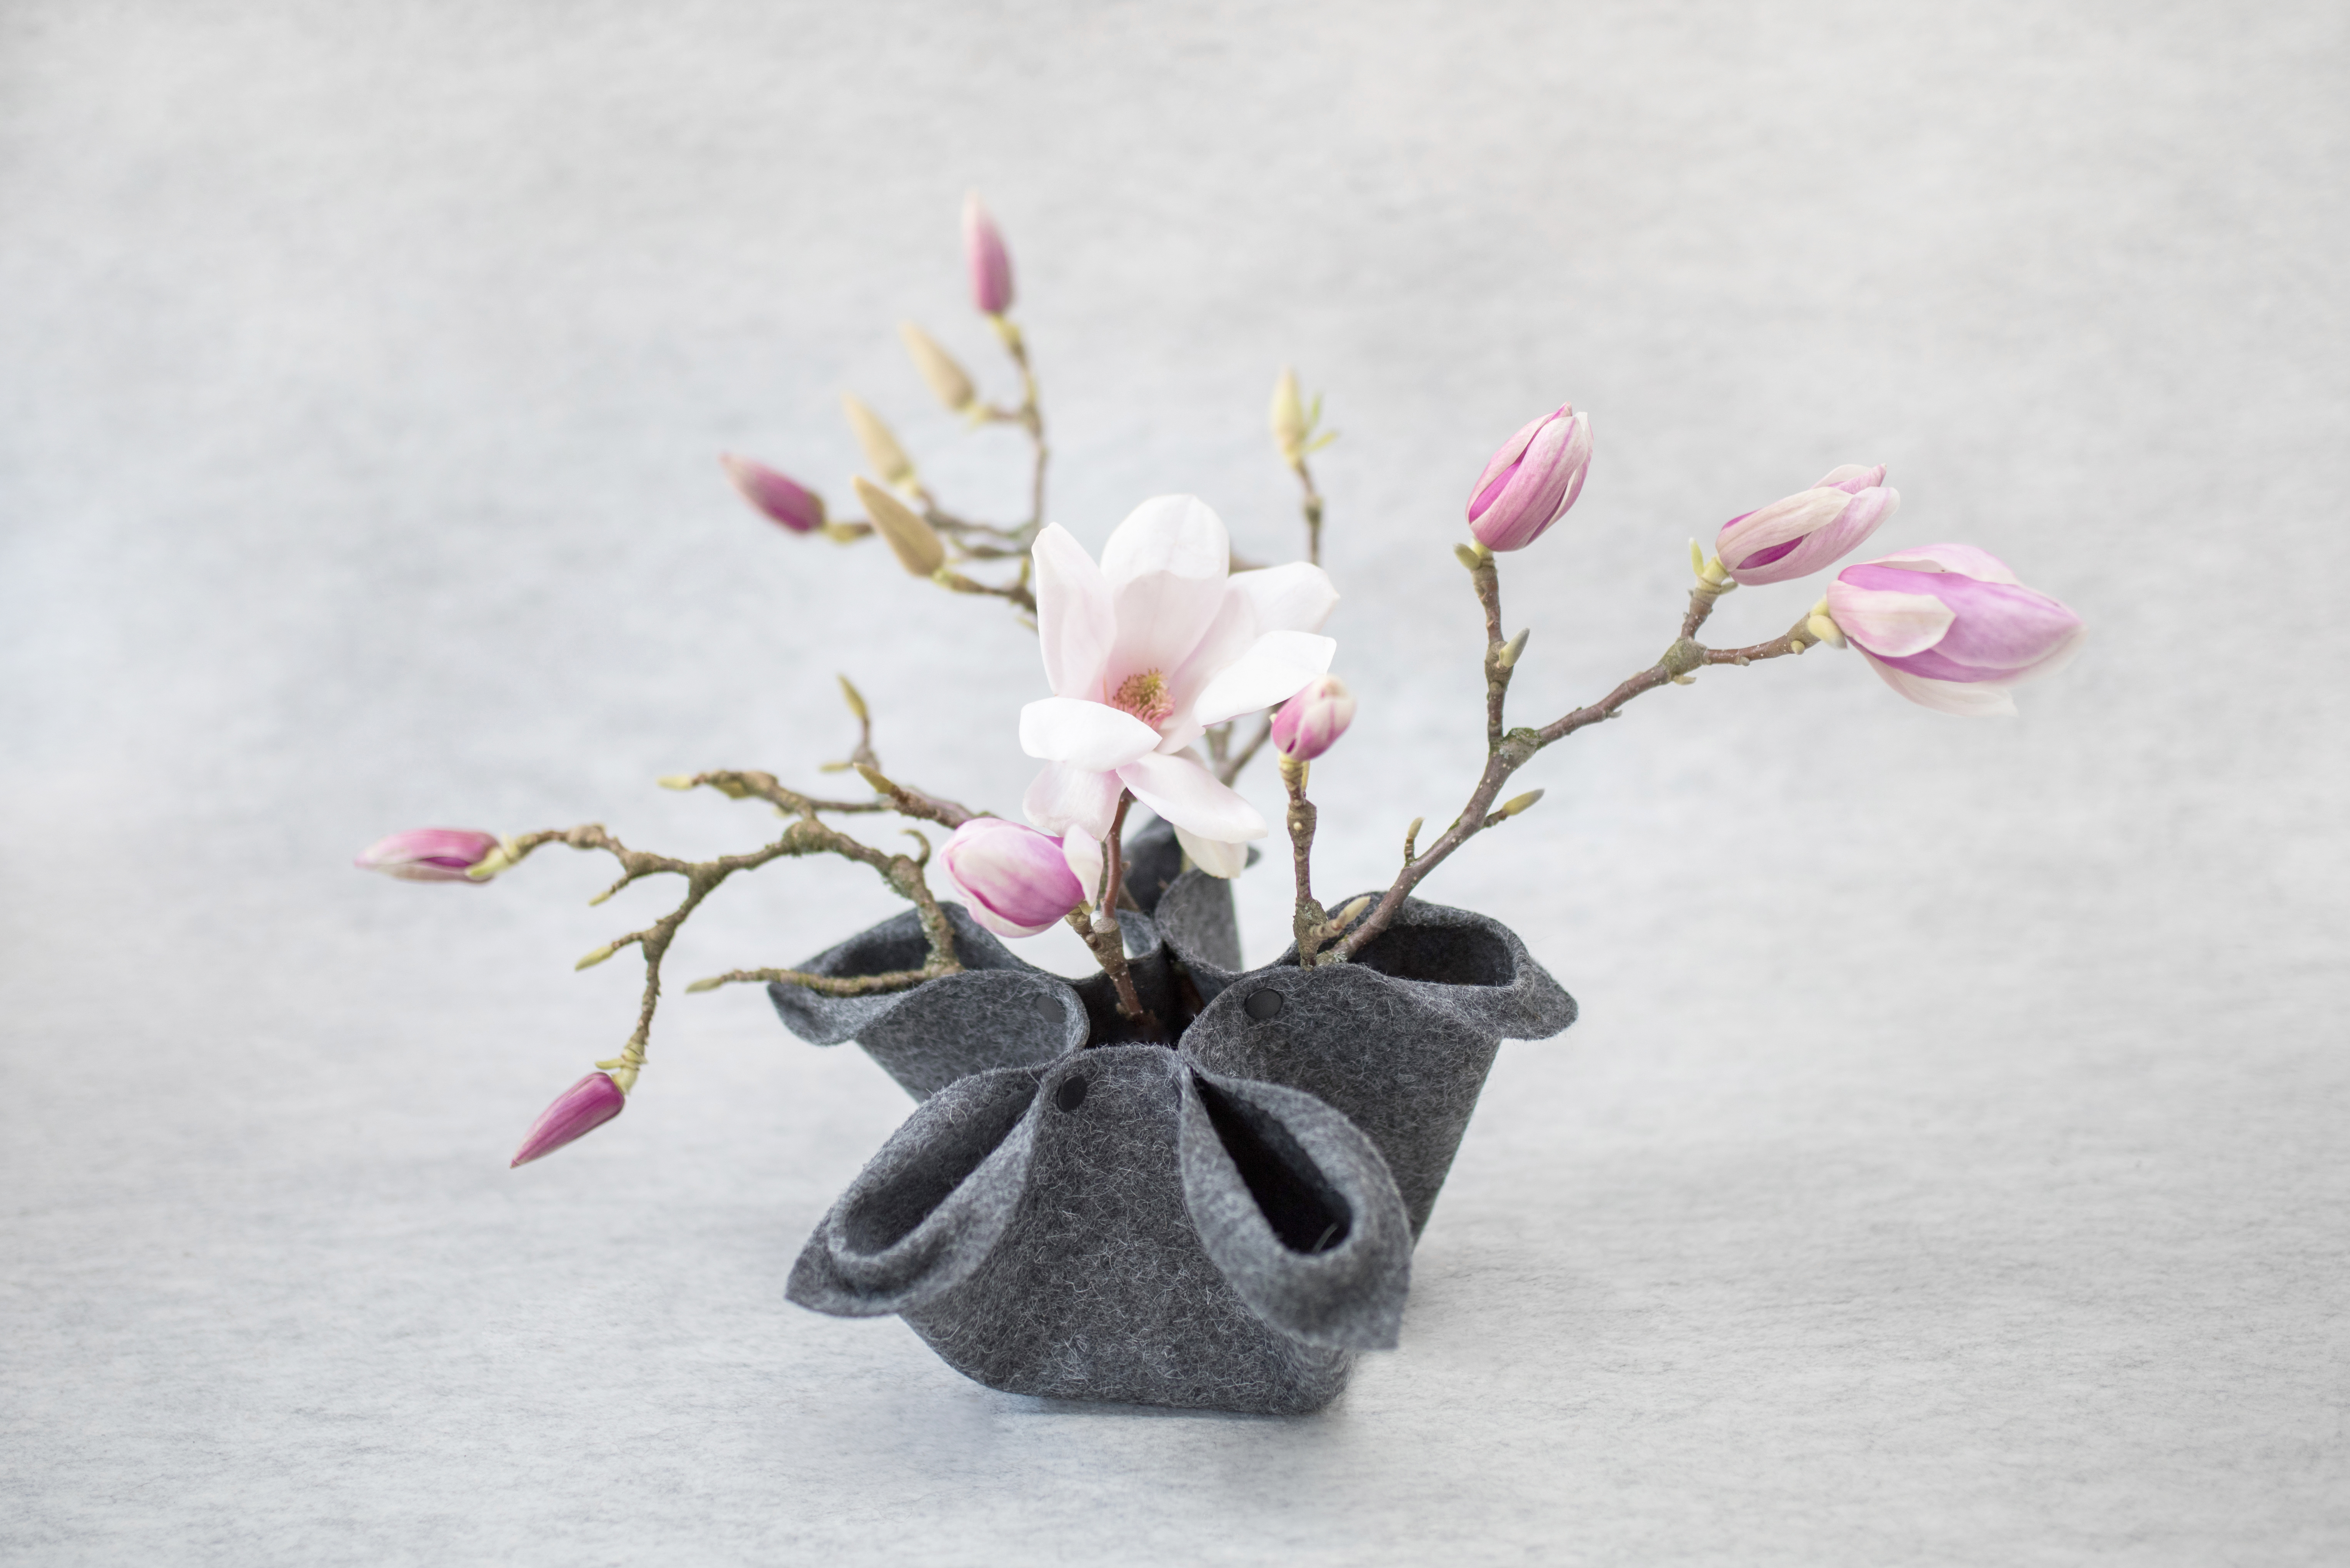 Florero Vase 2.0 mit hübschen Magnolienästen bestückt